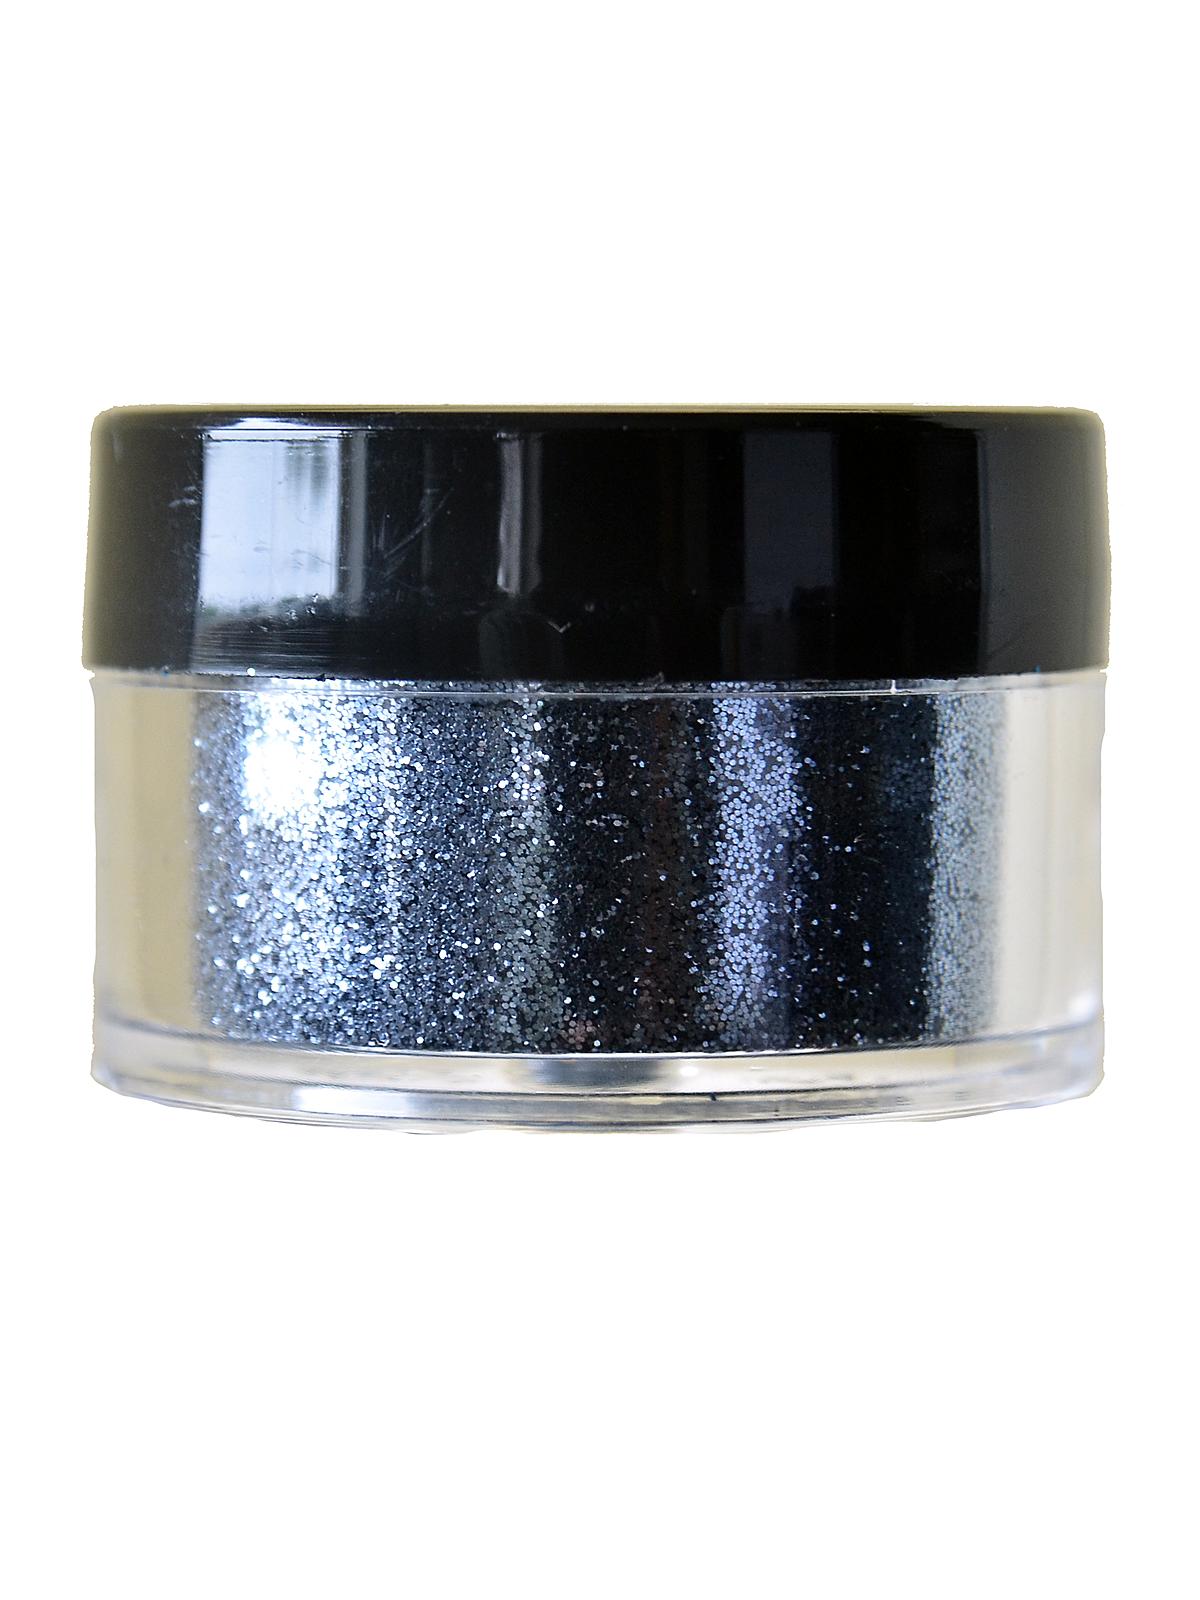 Ultrafine Opaque Glitter Hematite 1 2 Oz. Jar